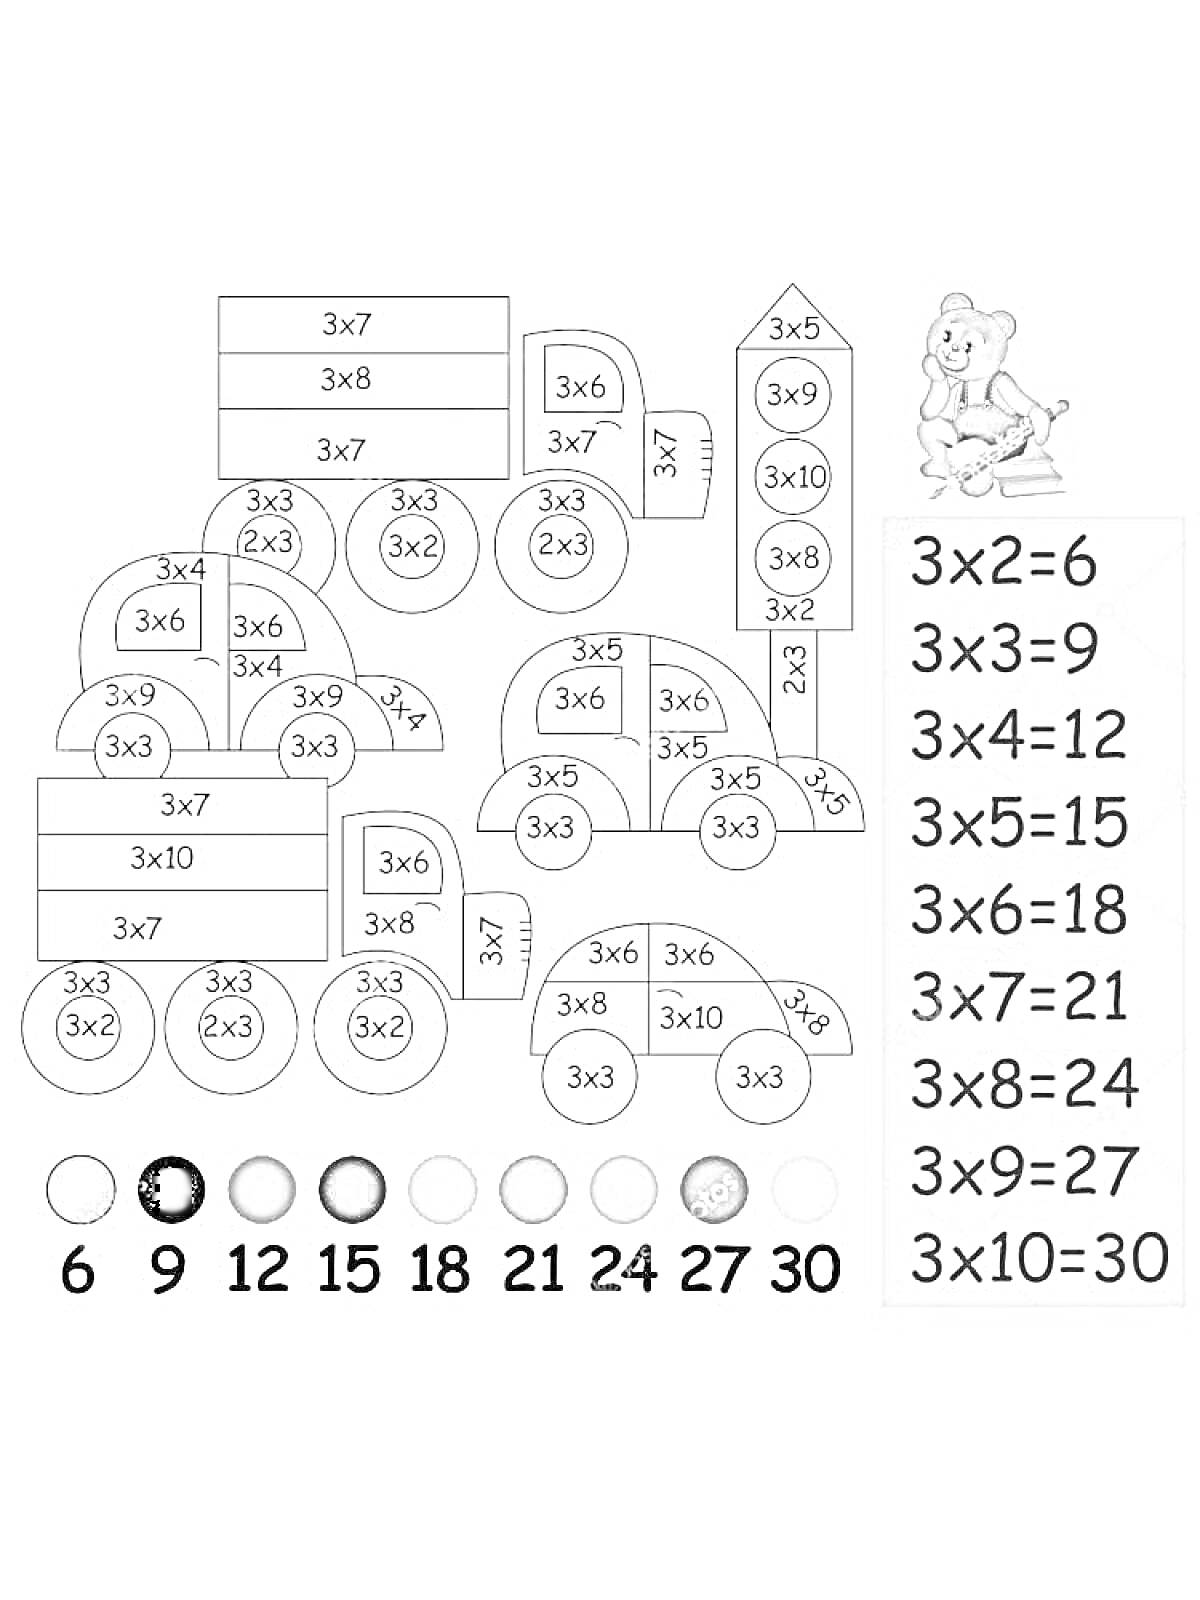 Раскраска Таблица умножения - паровозик, мяч, самолет, формулы умножения с результатами, иконка мышонка на жёлтом фоне